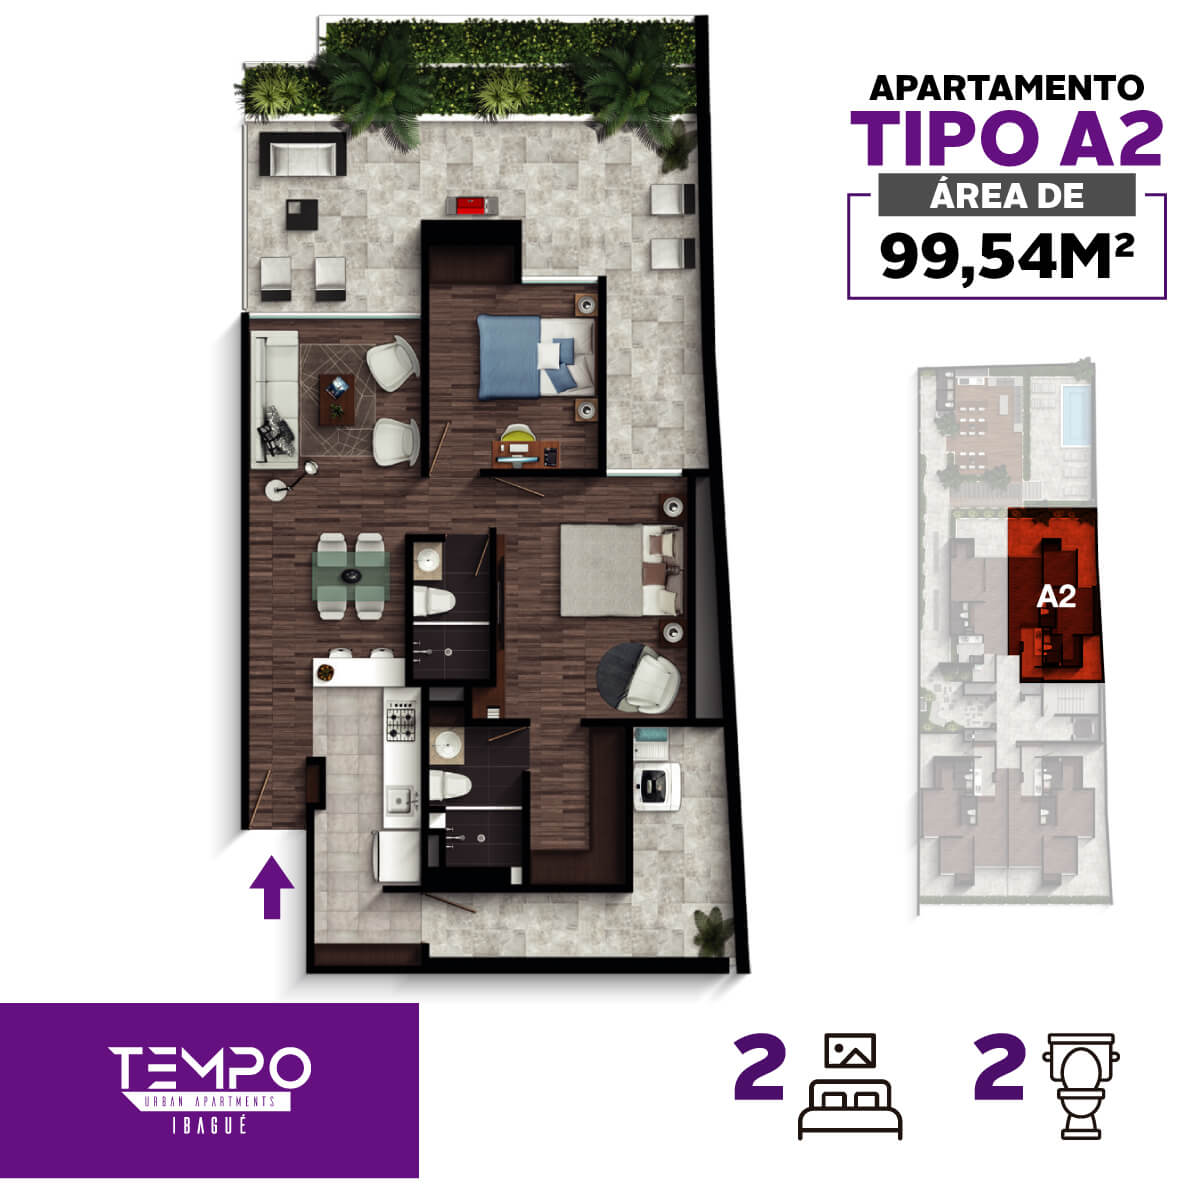 Tempo-urban-apartments-apartamento-tipo-A2